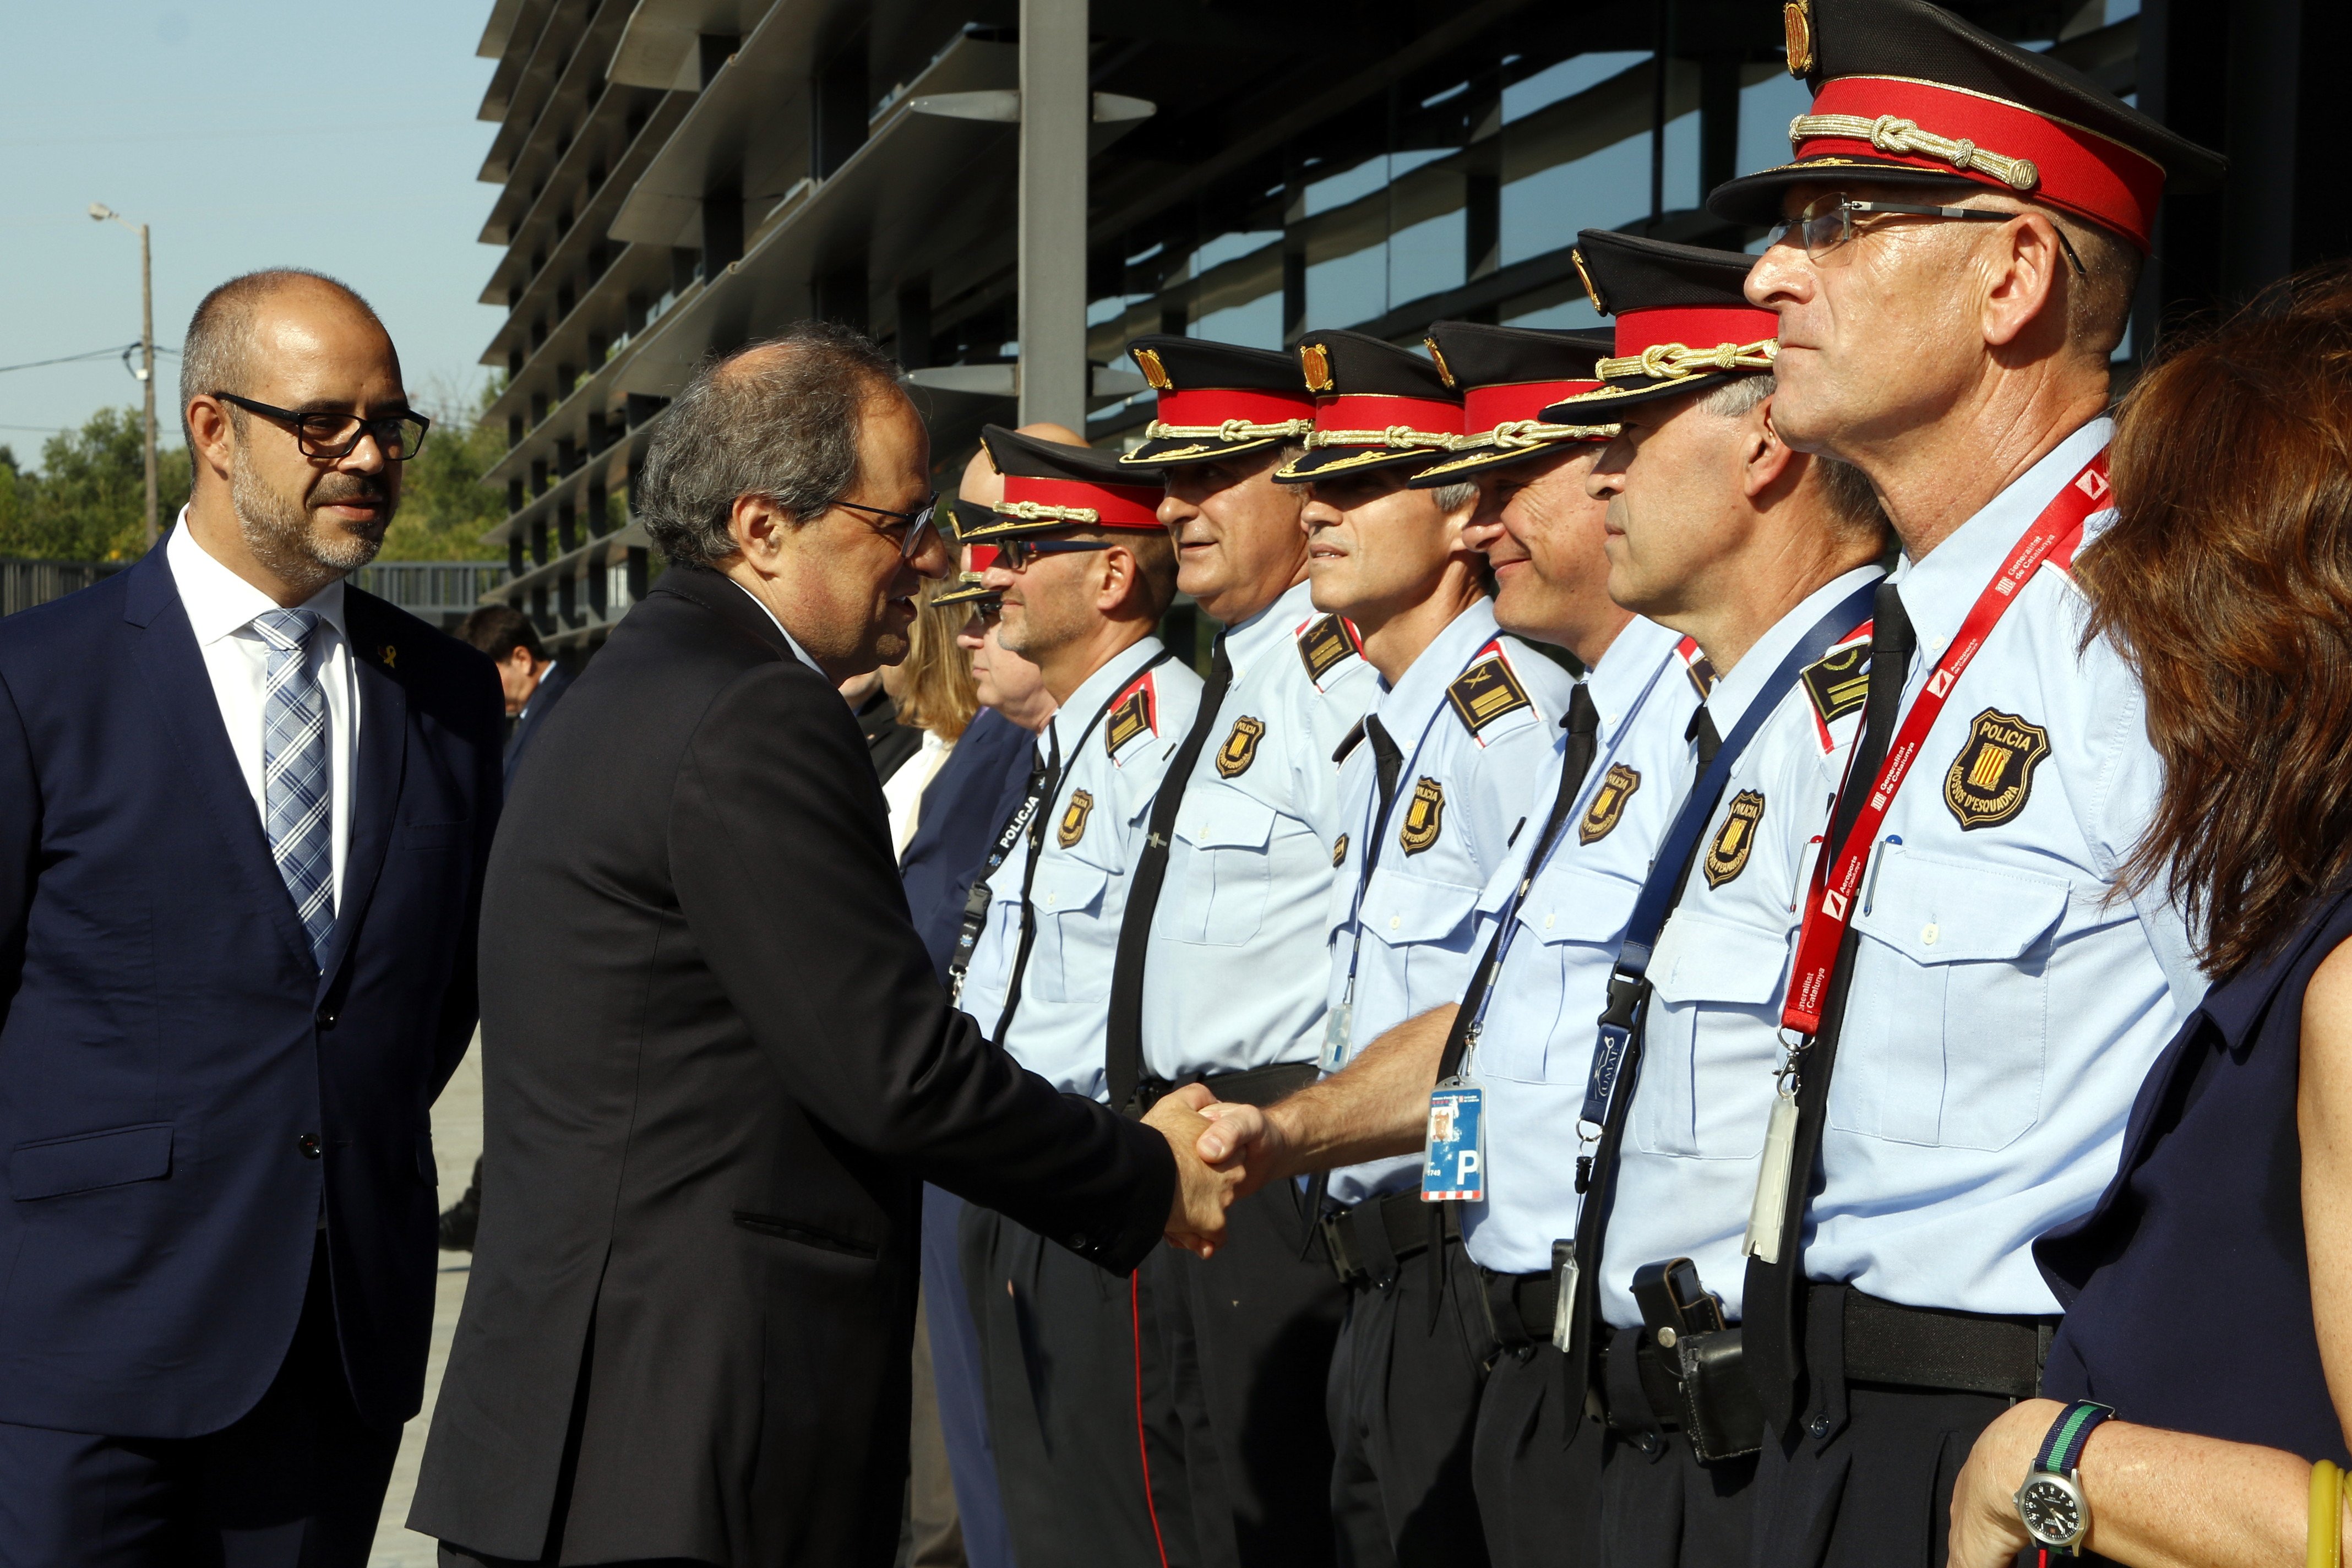 Presidència crea un equip específic de seguretat per al president, expresidents i el Palau